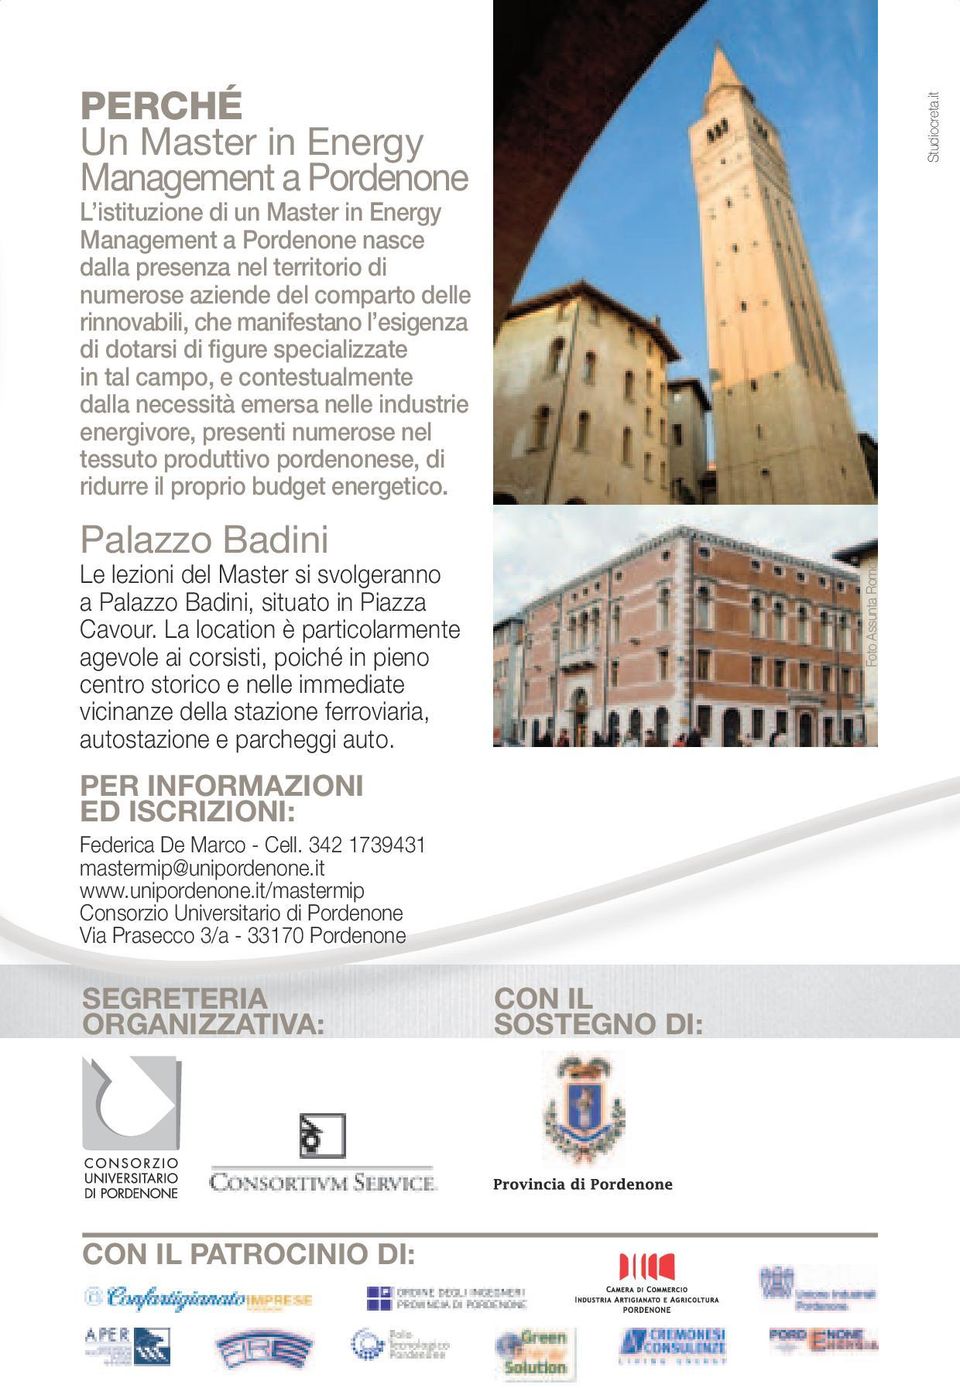 di ridurre il proprio budget energetico. Palazzo Badini Le lezioni del Master si svolgeranno a Palazzo Badini, situato in Piazza Cavour.